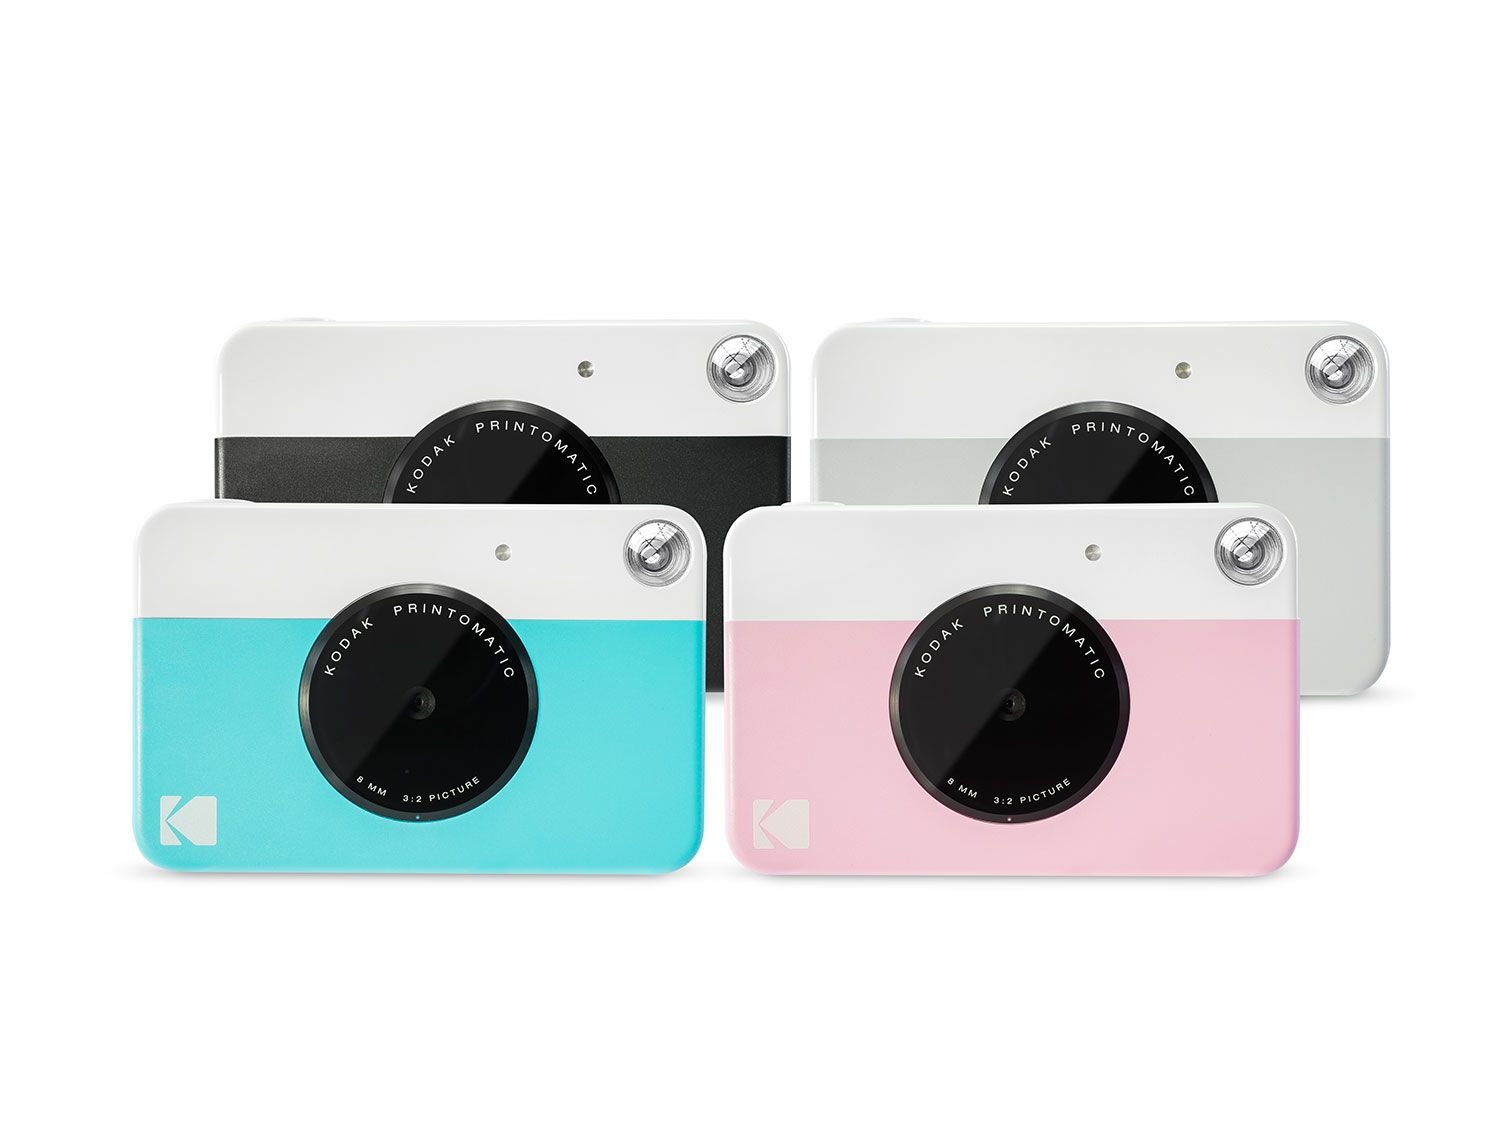 Kakadu Kunstmatig Melbourne Printomatic instant camera kopen? | LIDL